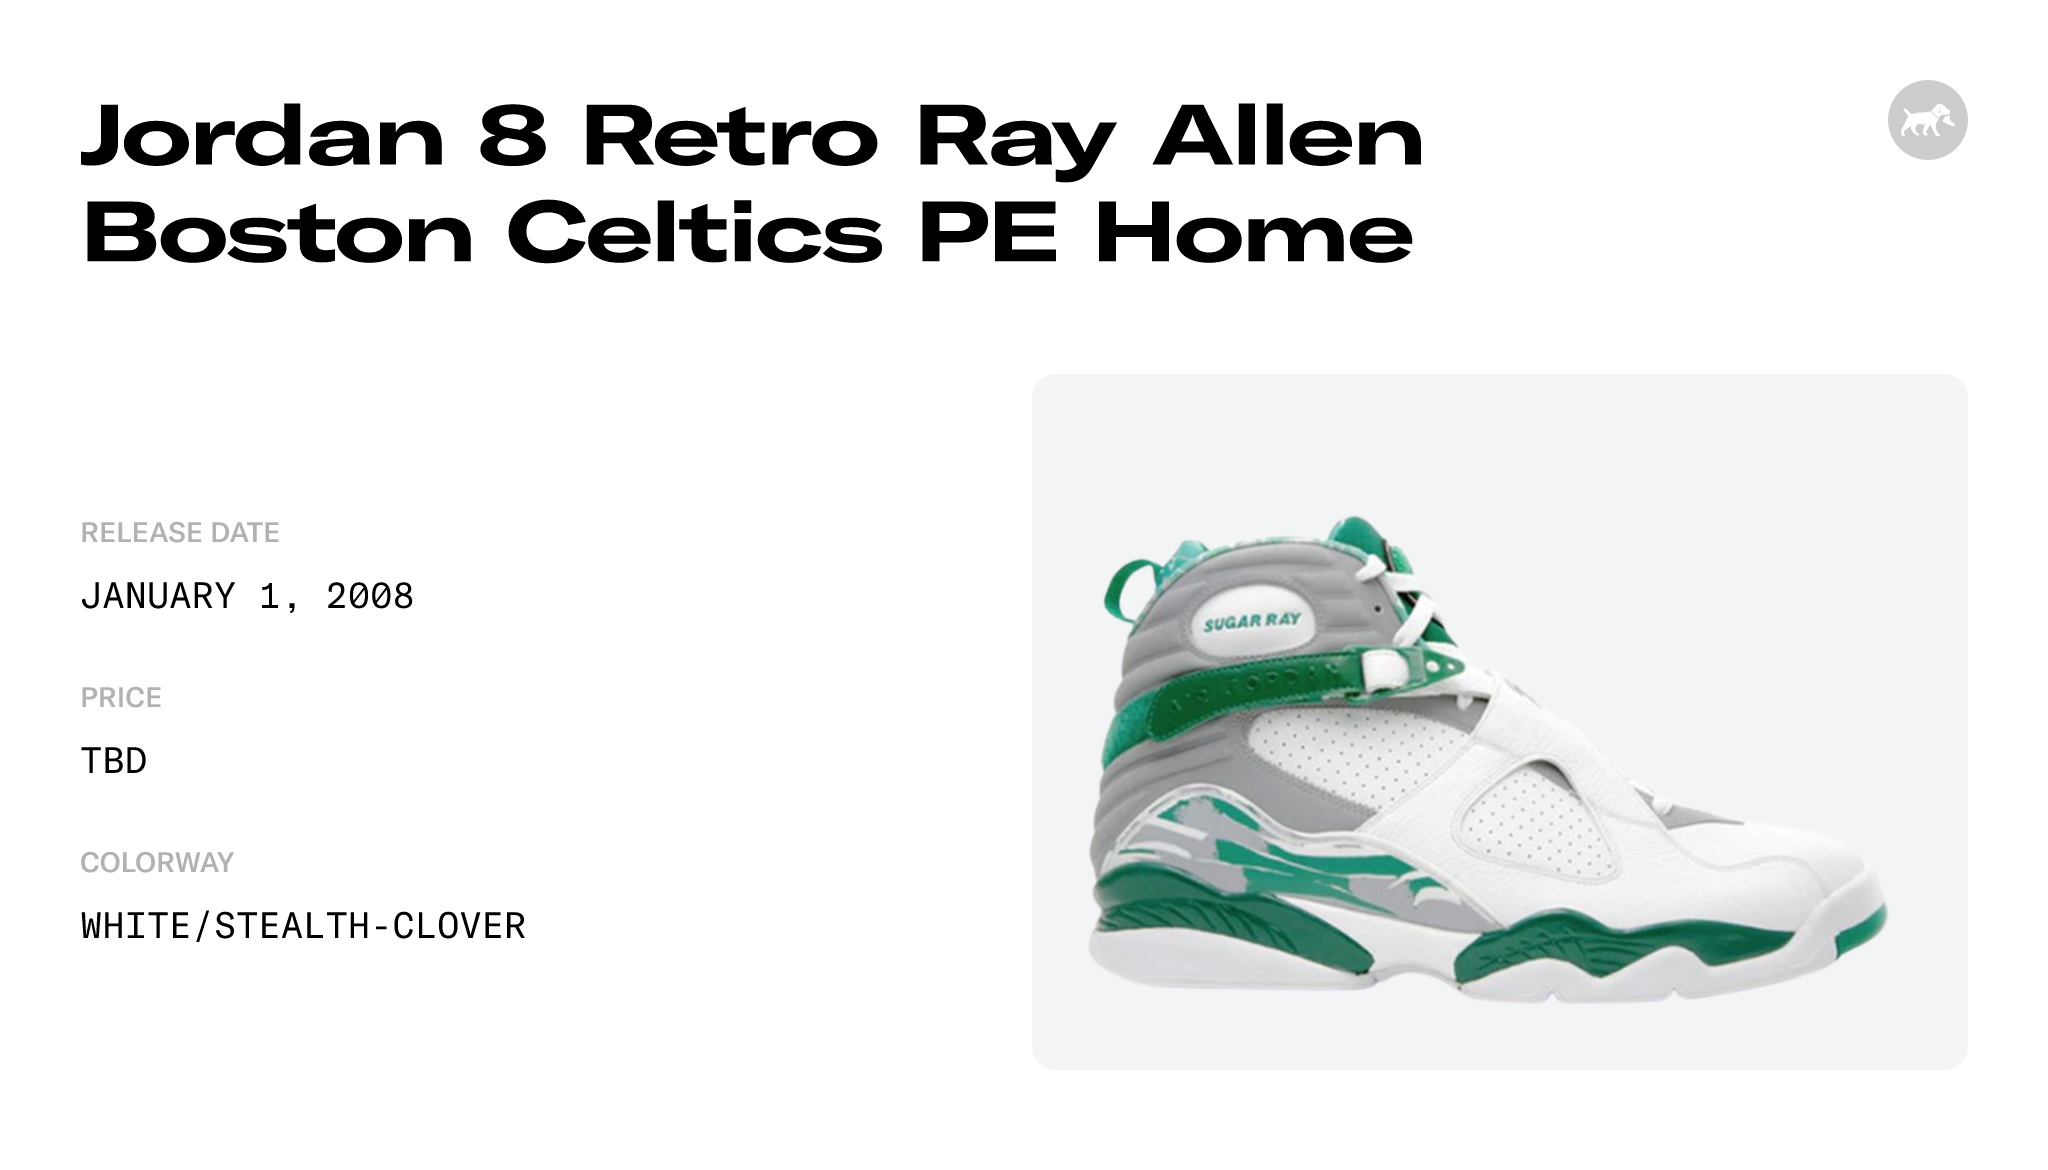 Jordan 8 Retro Ray Allen Boston Celtics PE Away